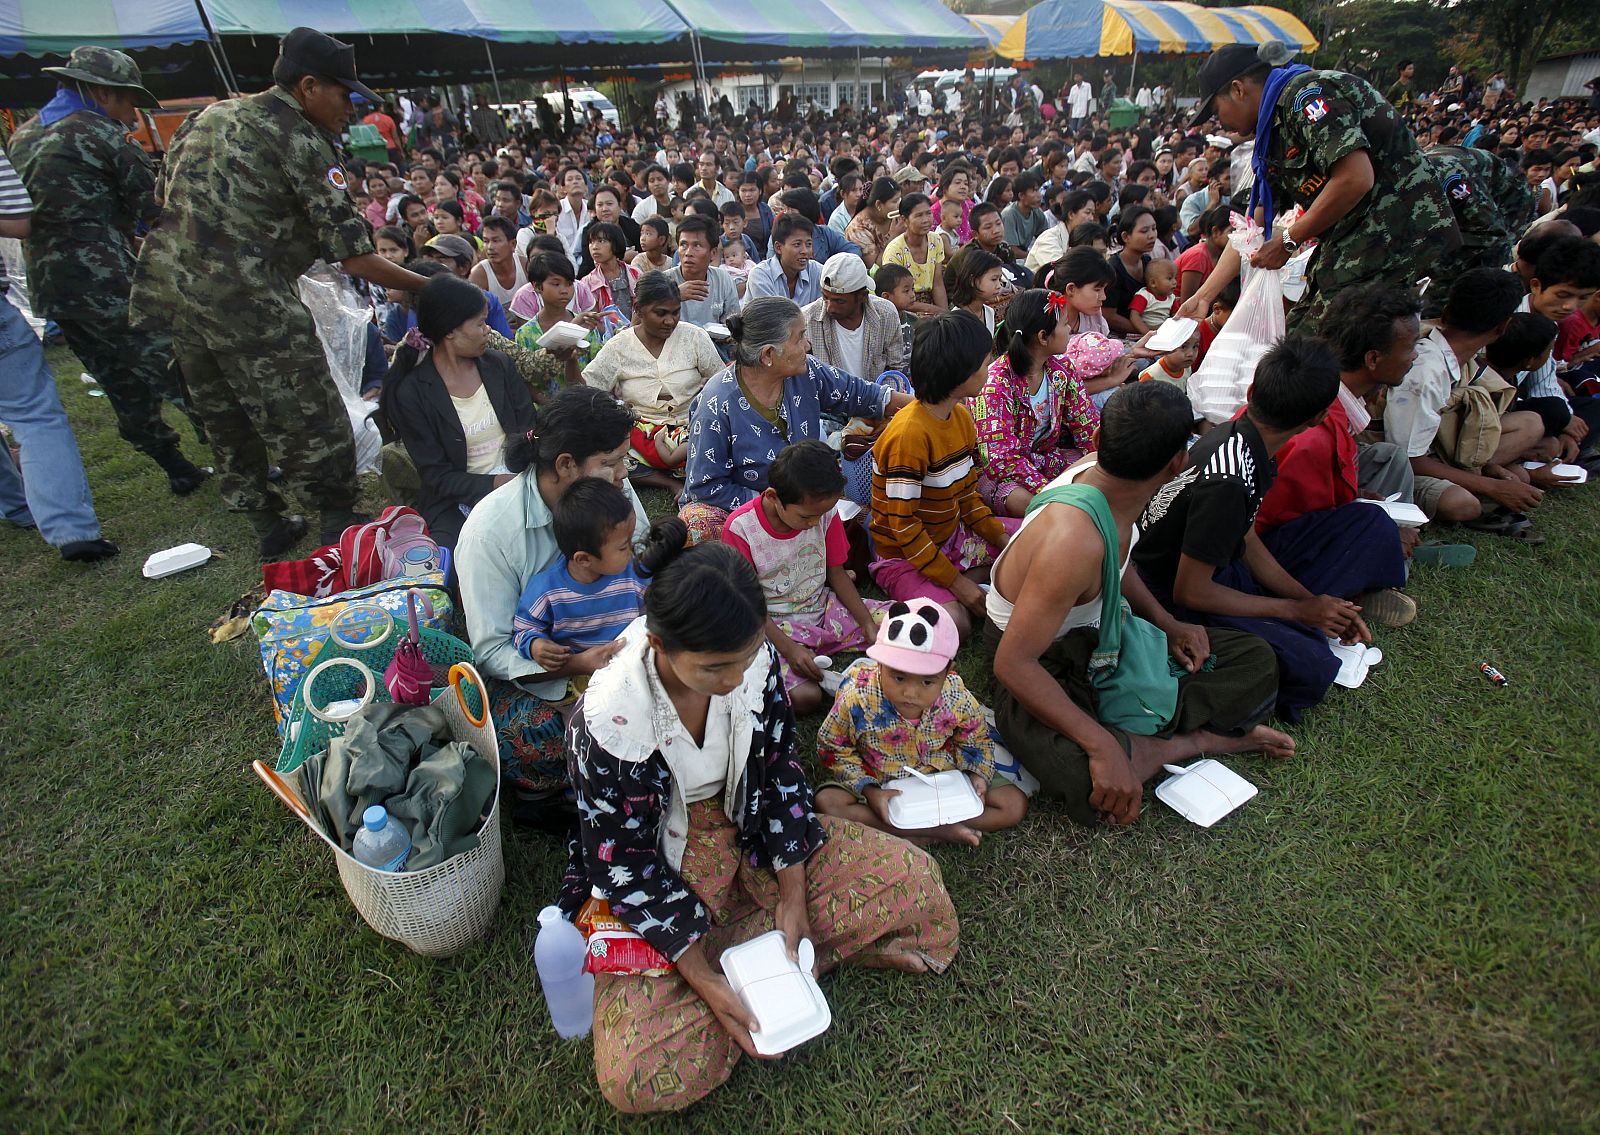 Los refugiados esperan a que los soldados les devuelvan a Birmania (Myanmar)